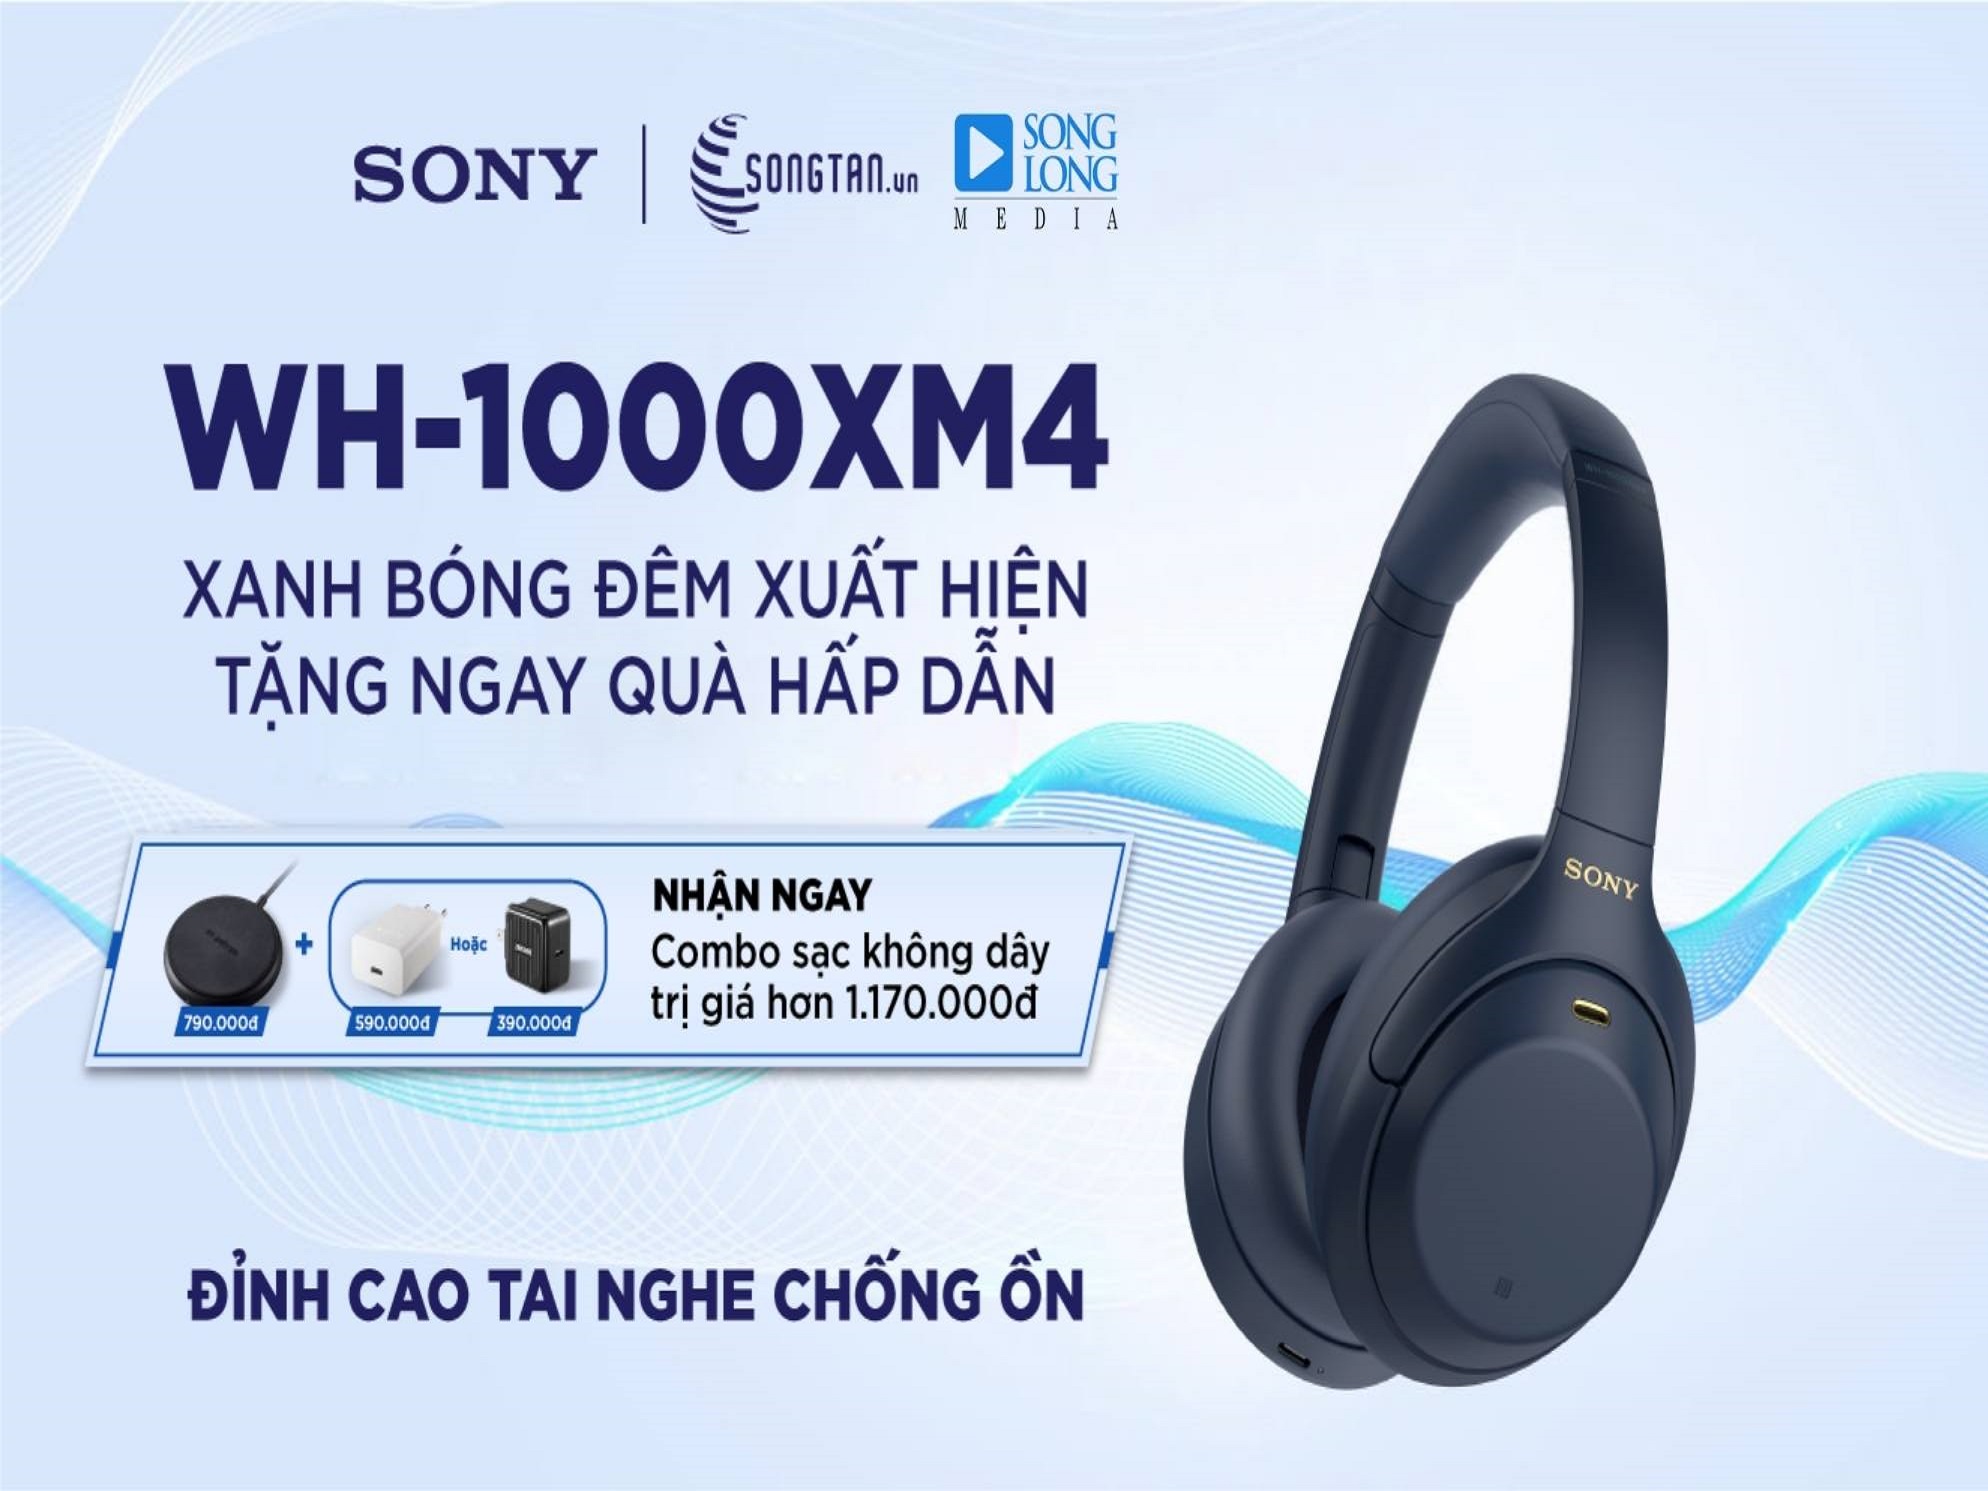 Ôi Thật Bất Ngời - Tai nghe Sony WH-1000XM4 - Mầu mới Midnight Blue - Chương Trình Pre-ord kèm Combo quà tặng khủng!!!